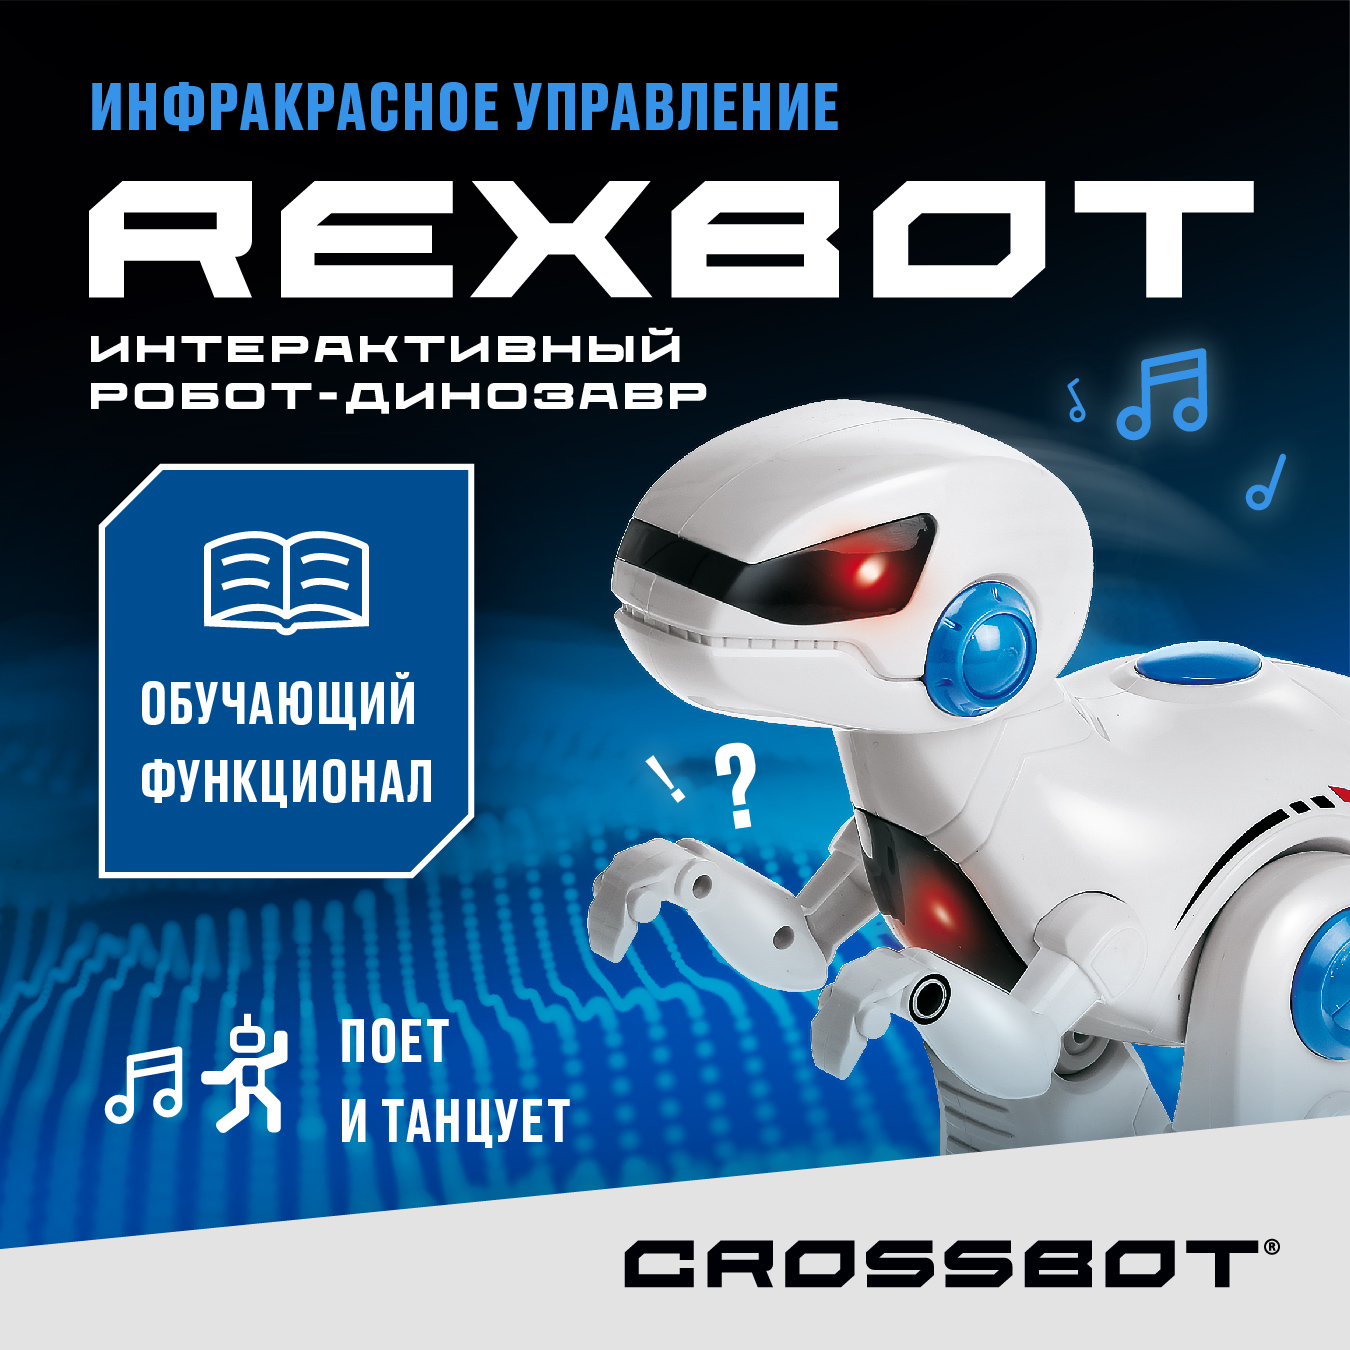 Радиоуправляемая игрушка Робот Динозавр Рекс на пульте Crossbot yearoo toy интерактивный динозавр игрушка на пульте управления